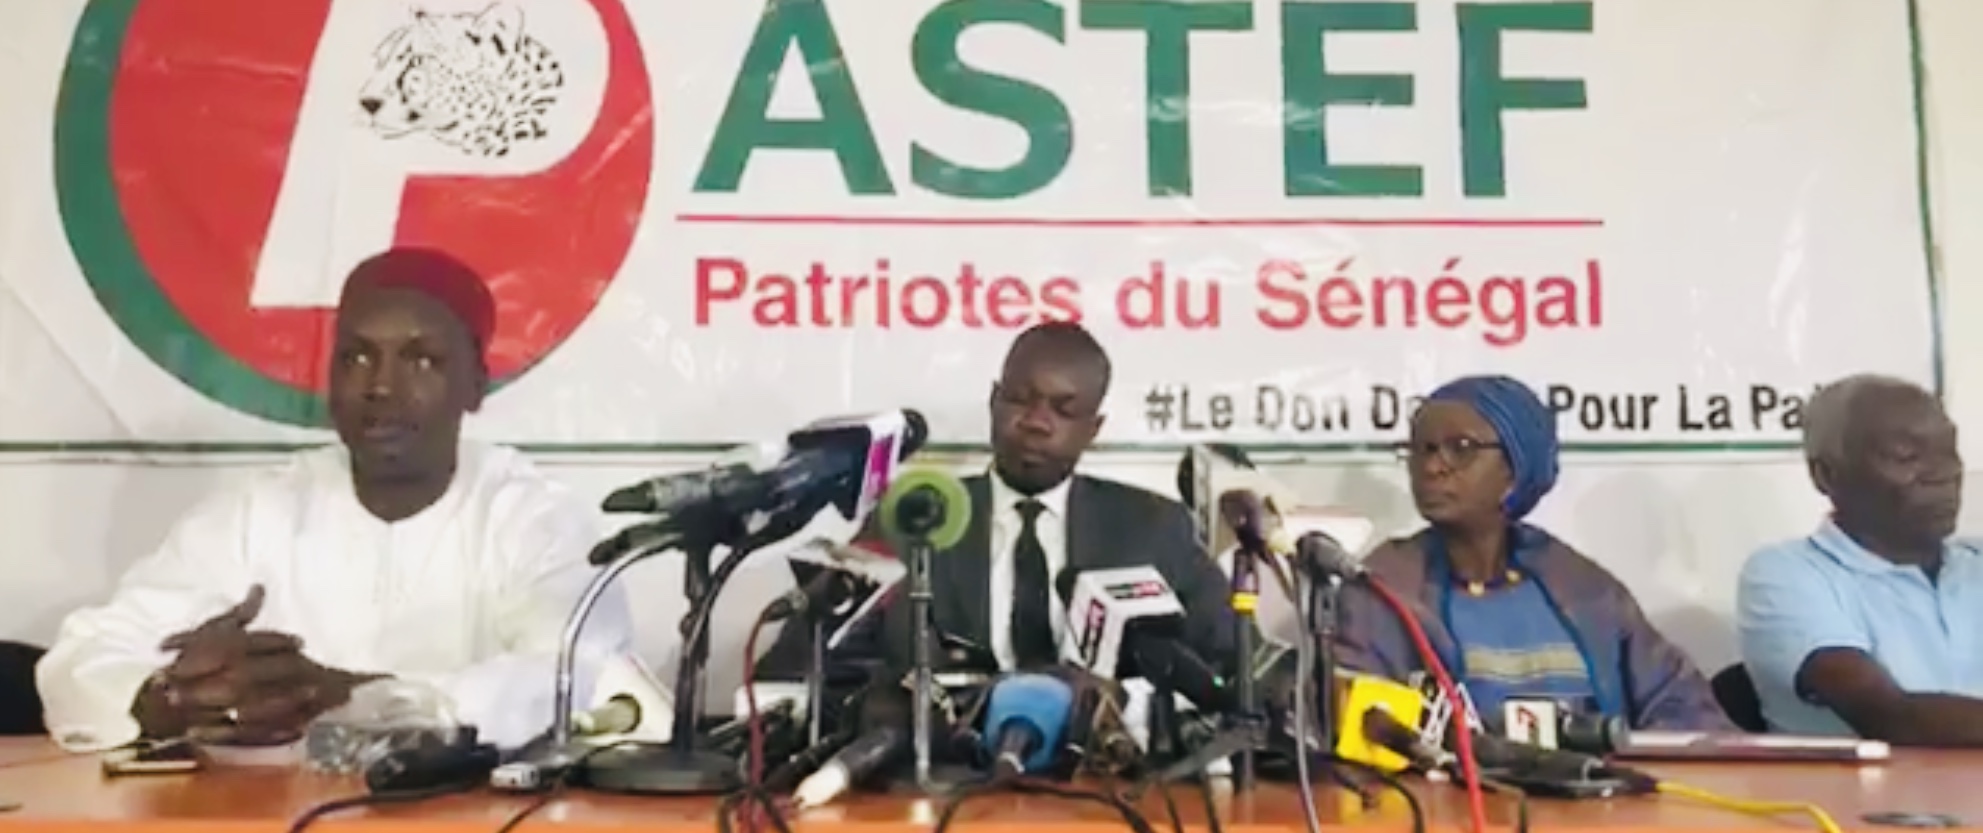 Dialogue national : après le Pds de Me Abdoulaye Wade, Pastef-les Patriotes boude Macky Sall